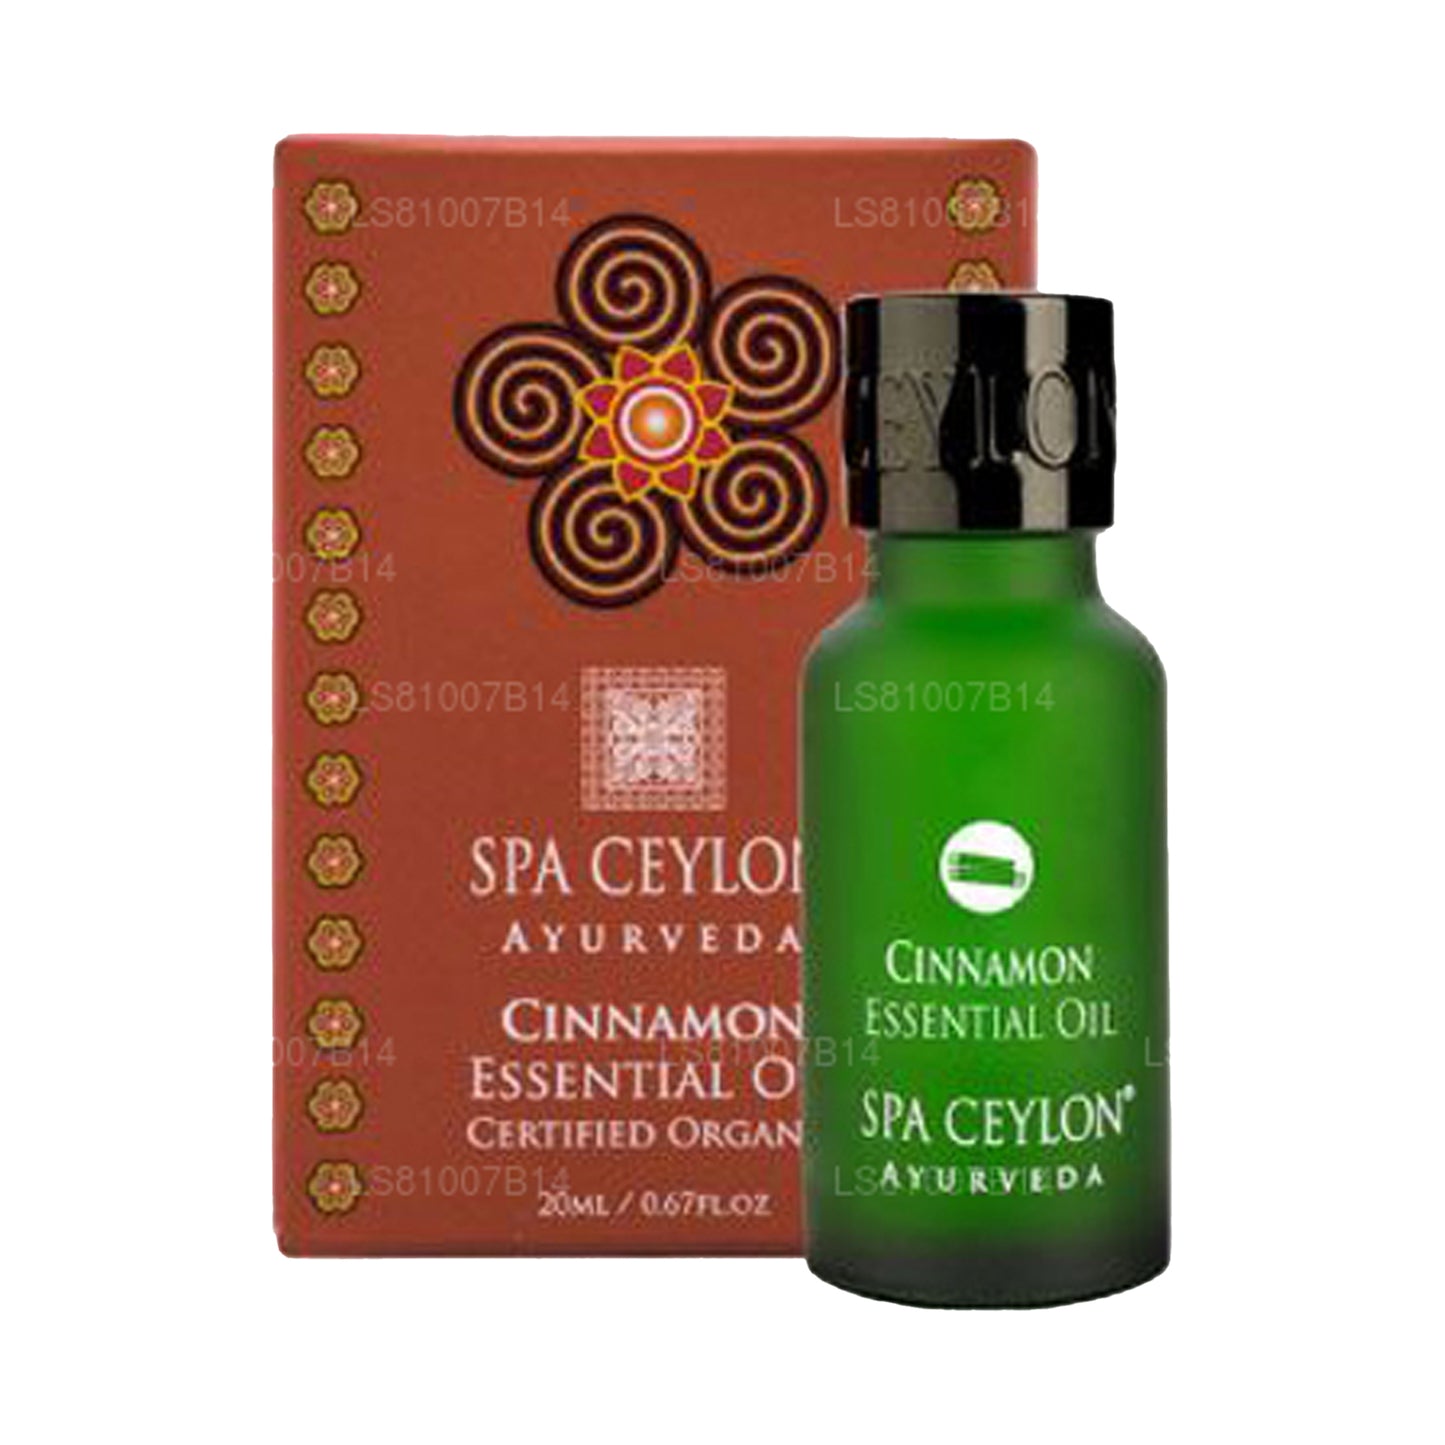 Spa Ceylon Cinnamon - Etherische olie (20 ml)